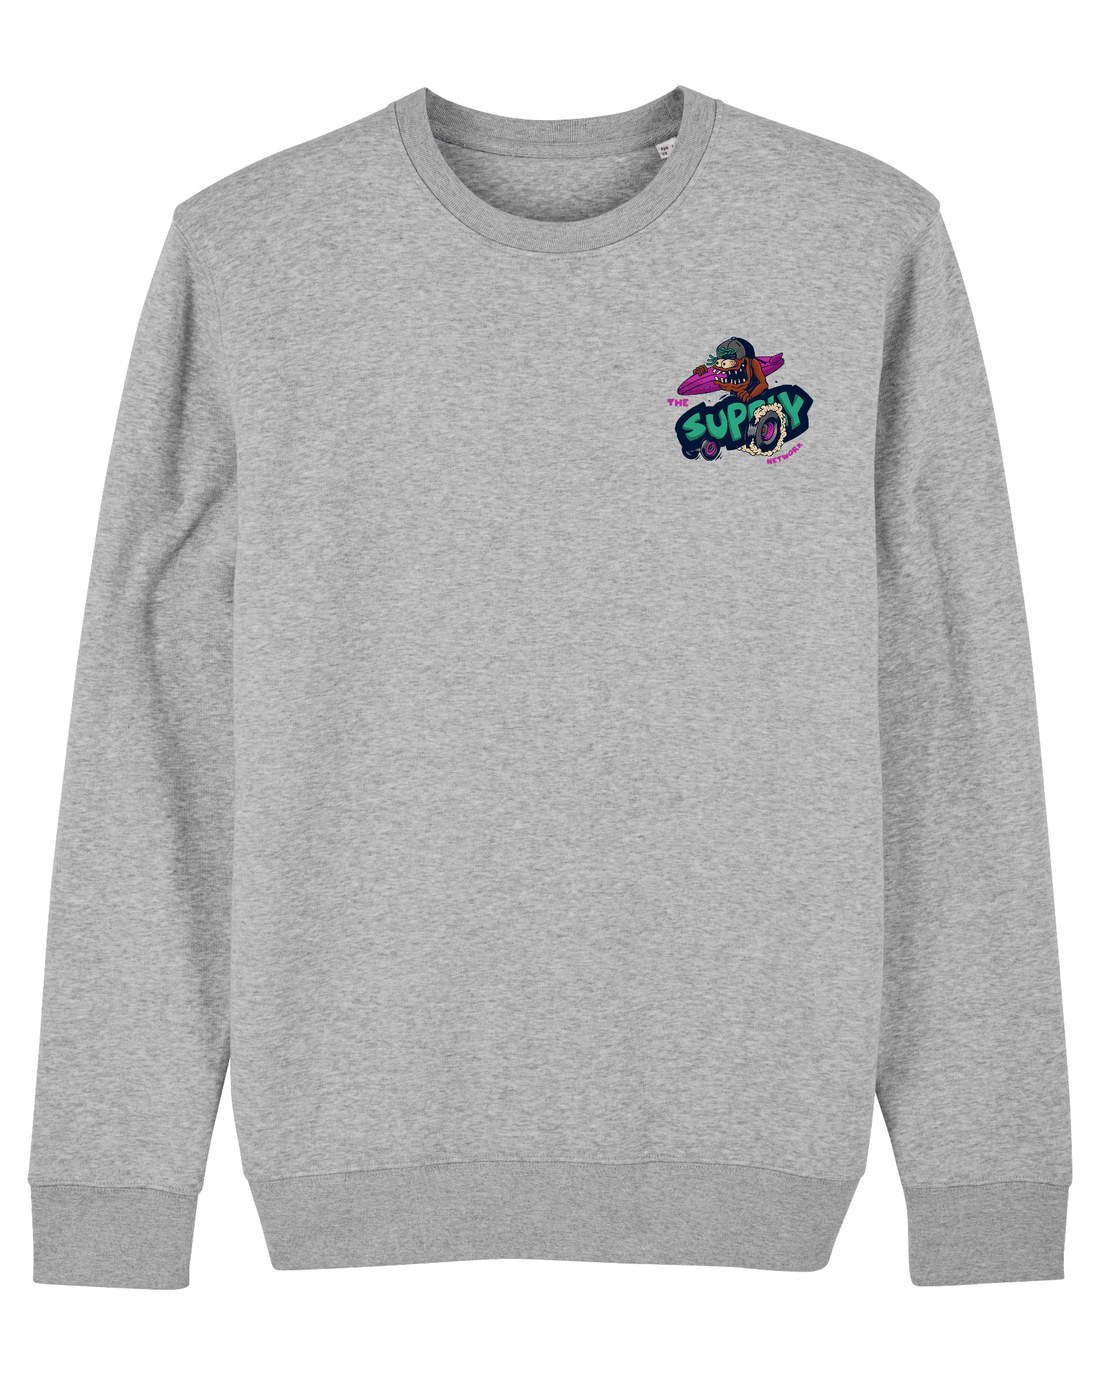 Grey Skater Sweatshirt, Lets Go Surf Front Print